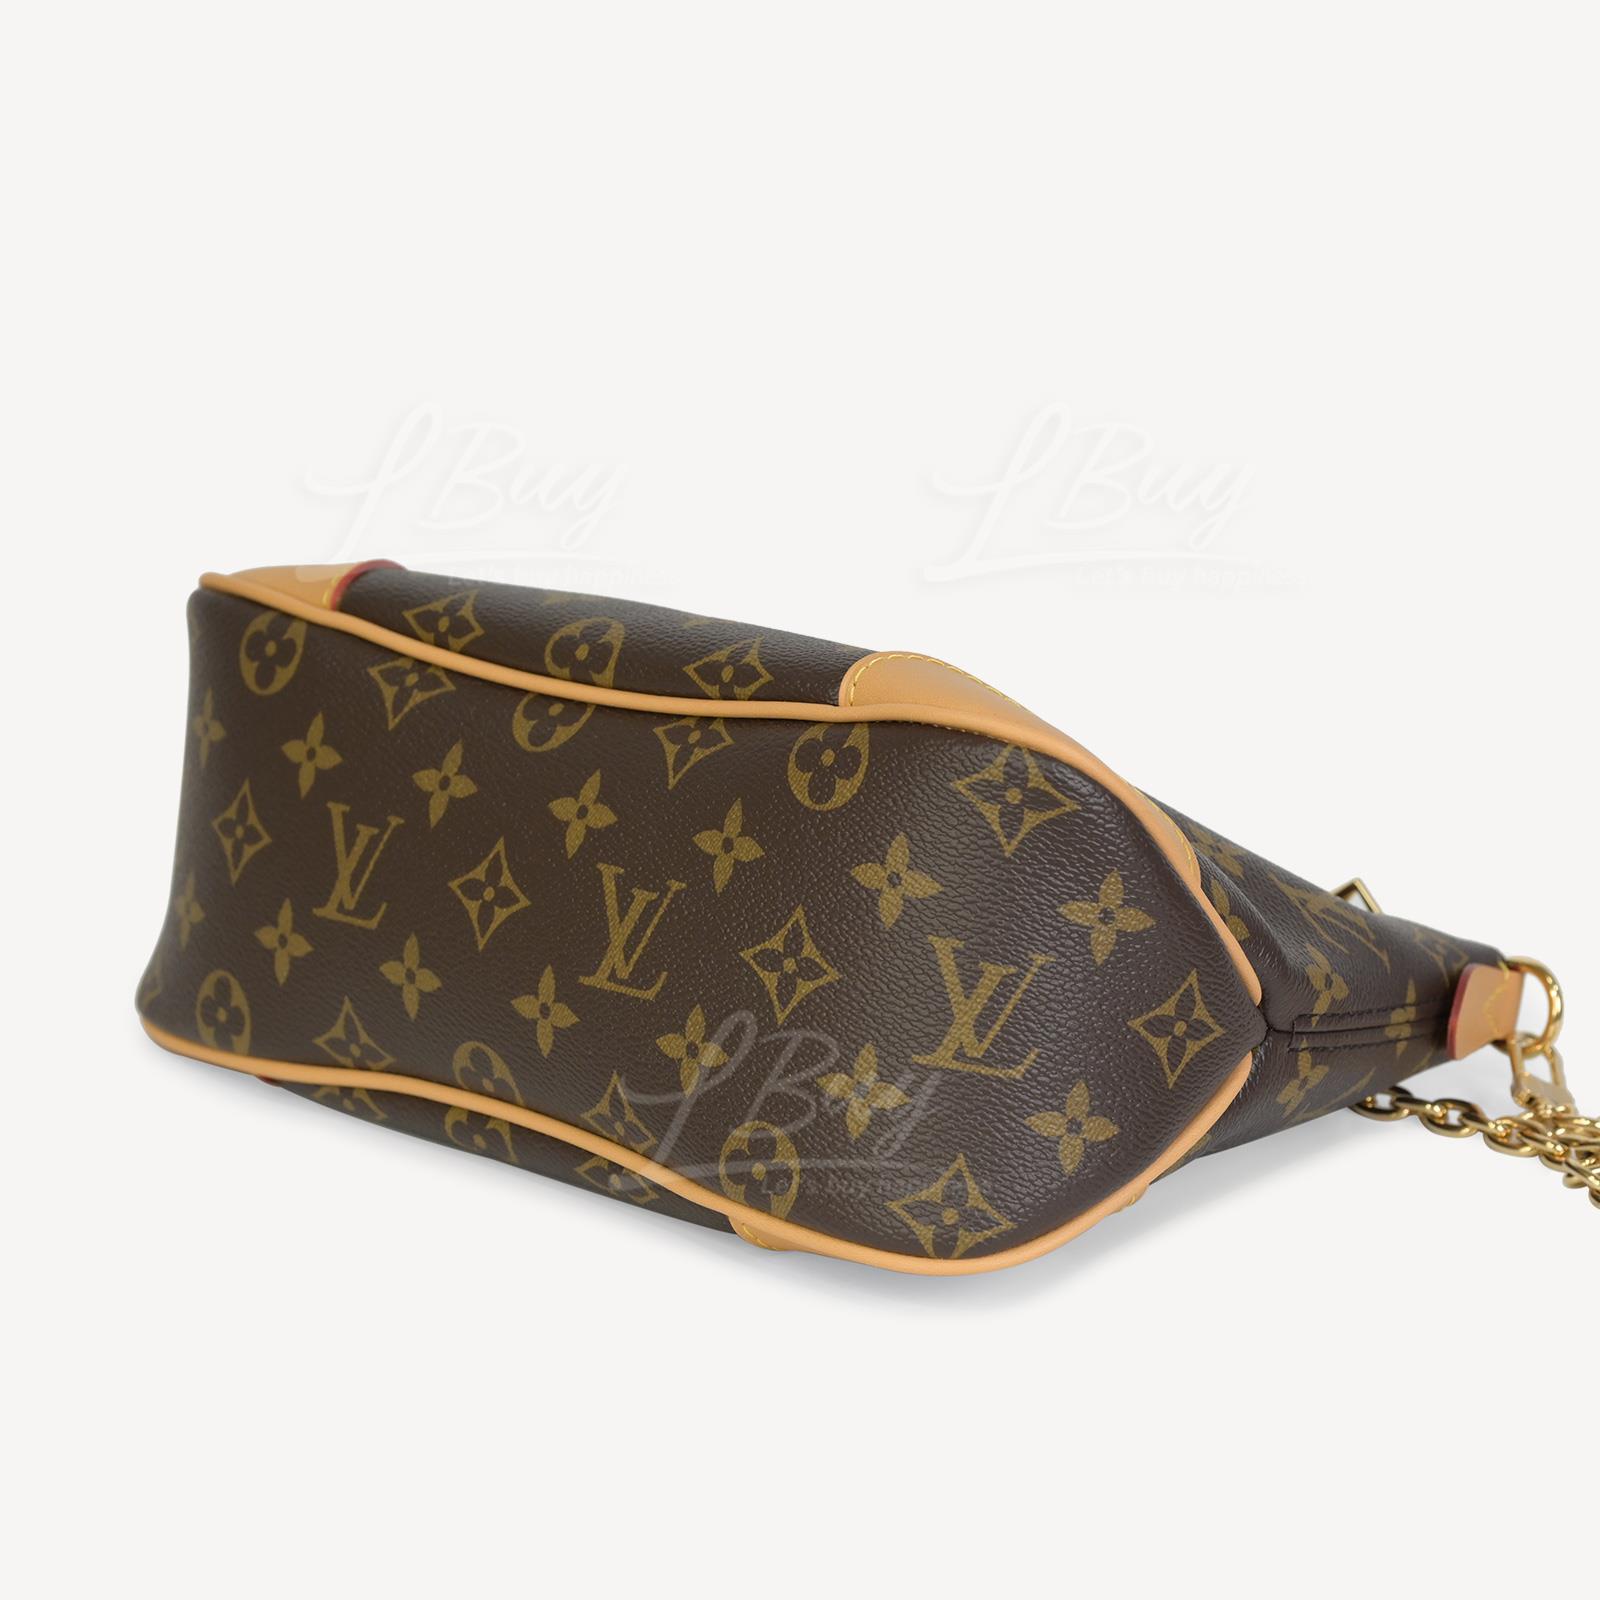 Shop Louis Vuitton Boulogne (M45831, M45832) by luxurysuite